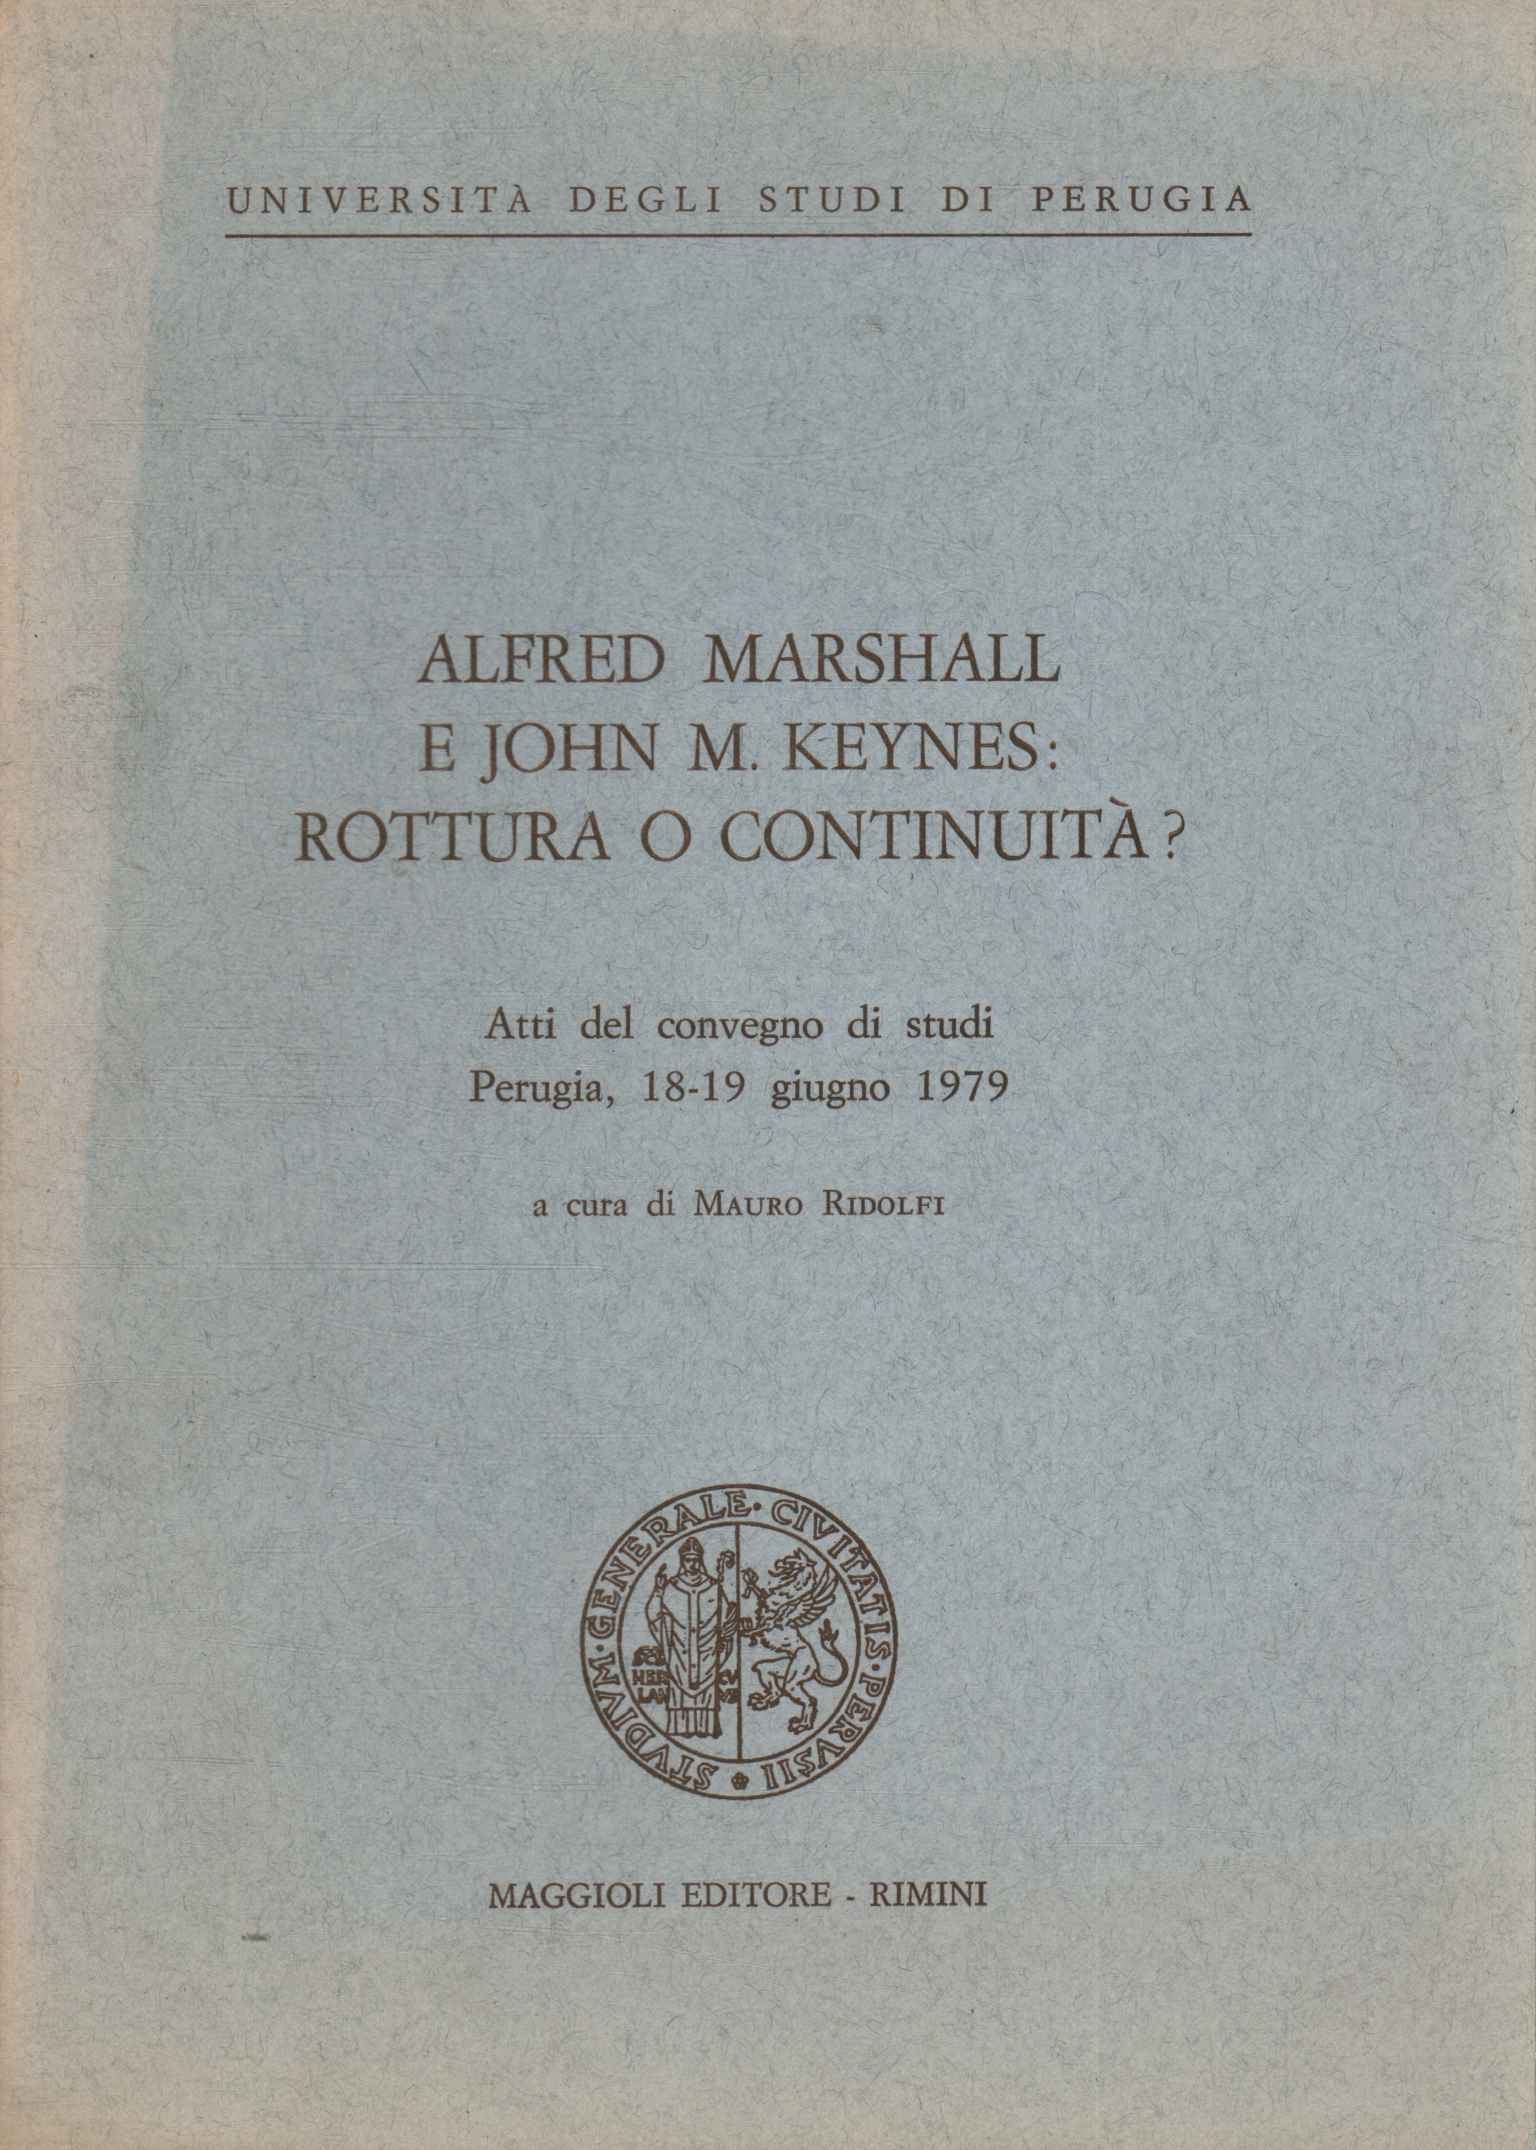 Alfred Marshall und John M. Keynes: Trennung